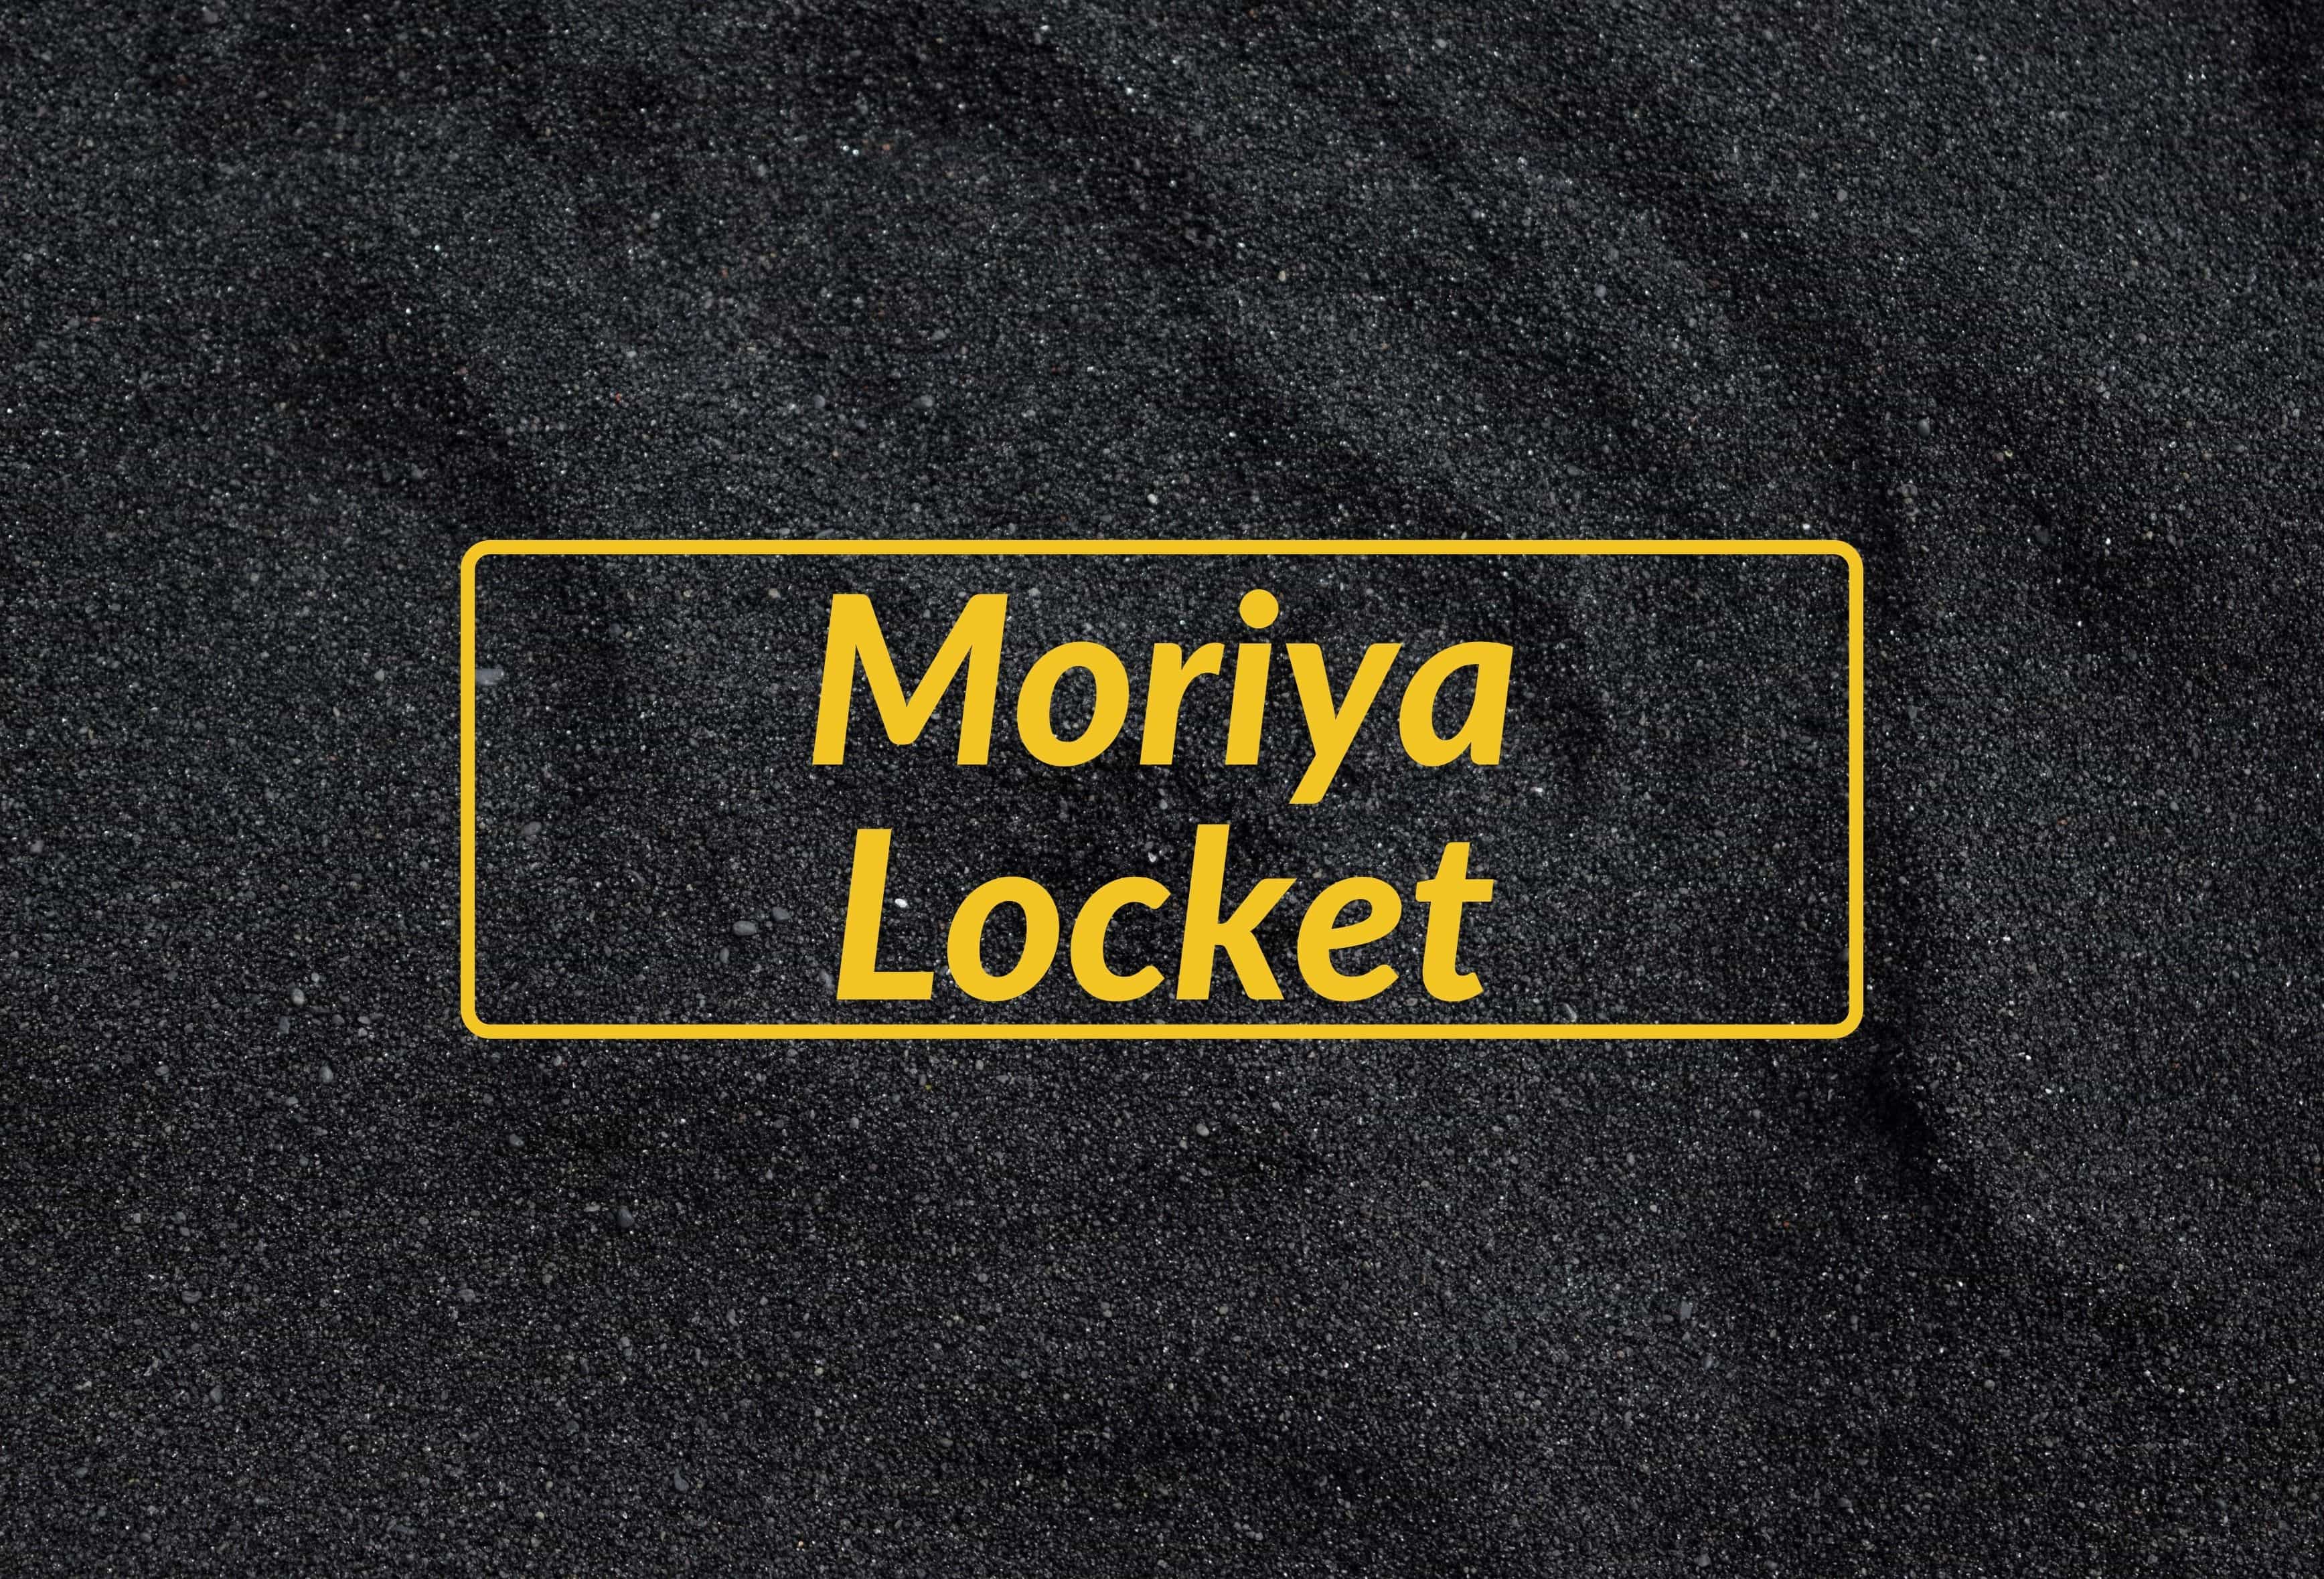 Moriya Locket